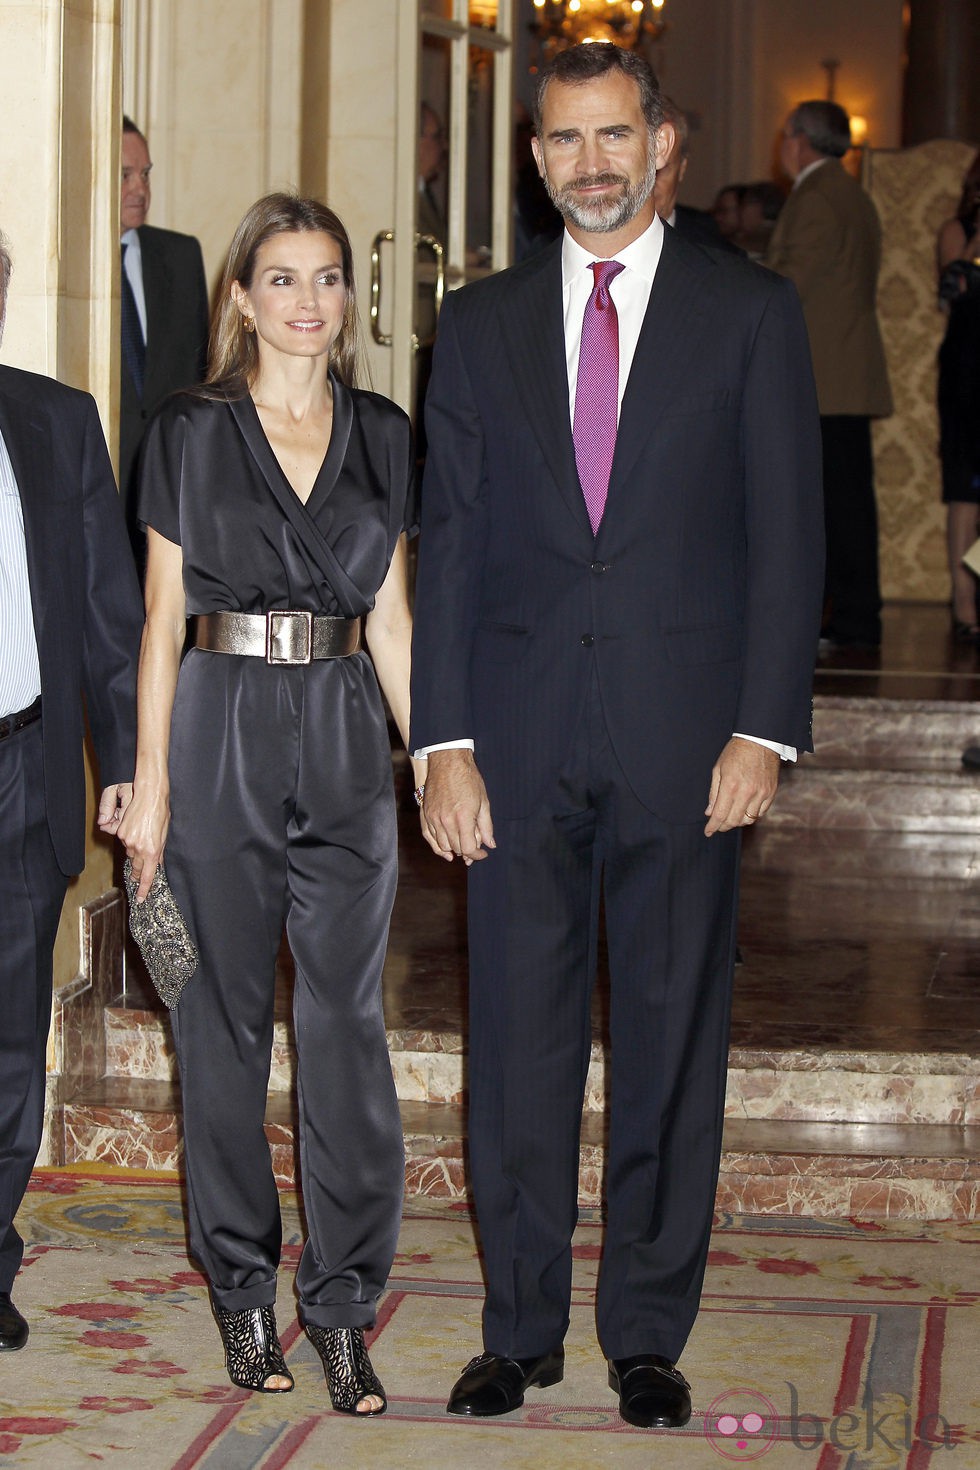 Los Príncipes Felipe y Letizia en la entrega del Premio Francisco Cerecedo